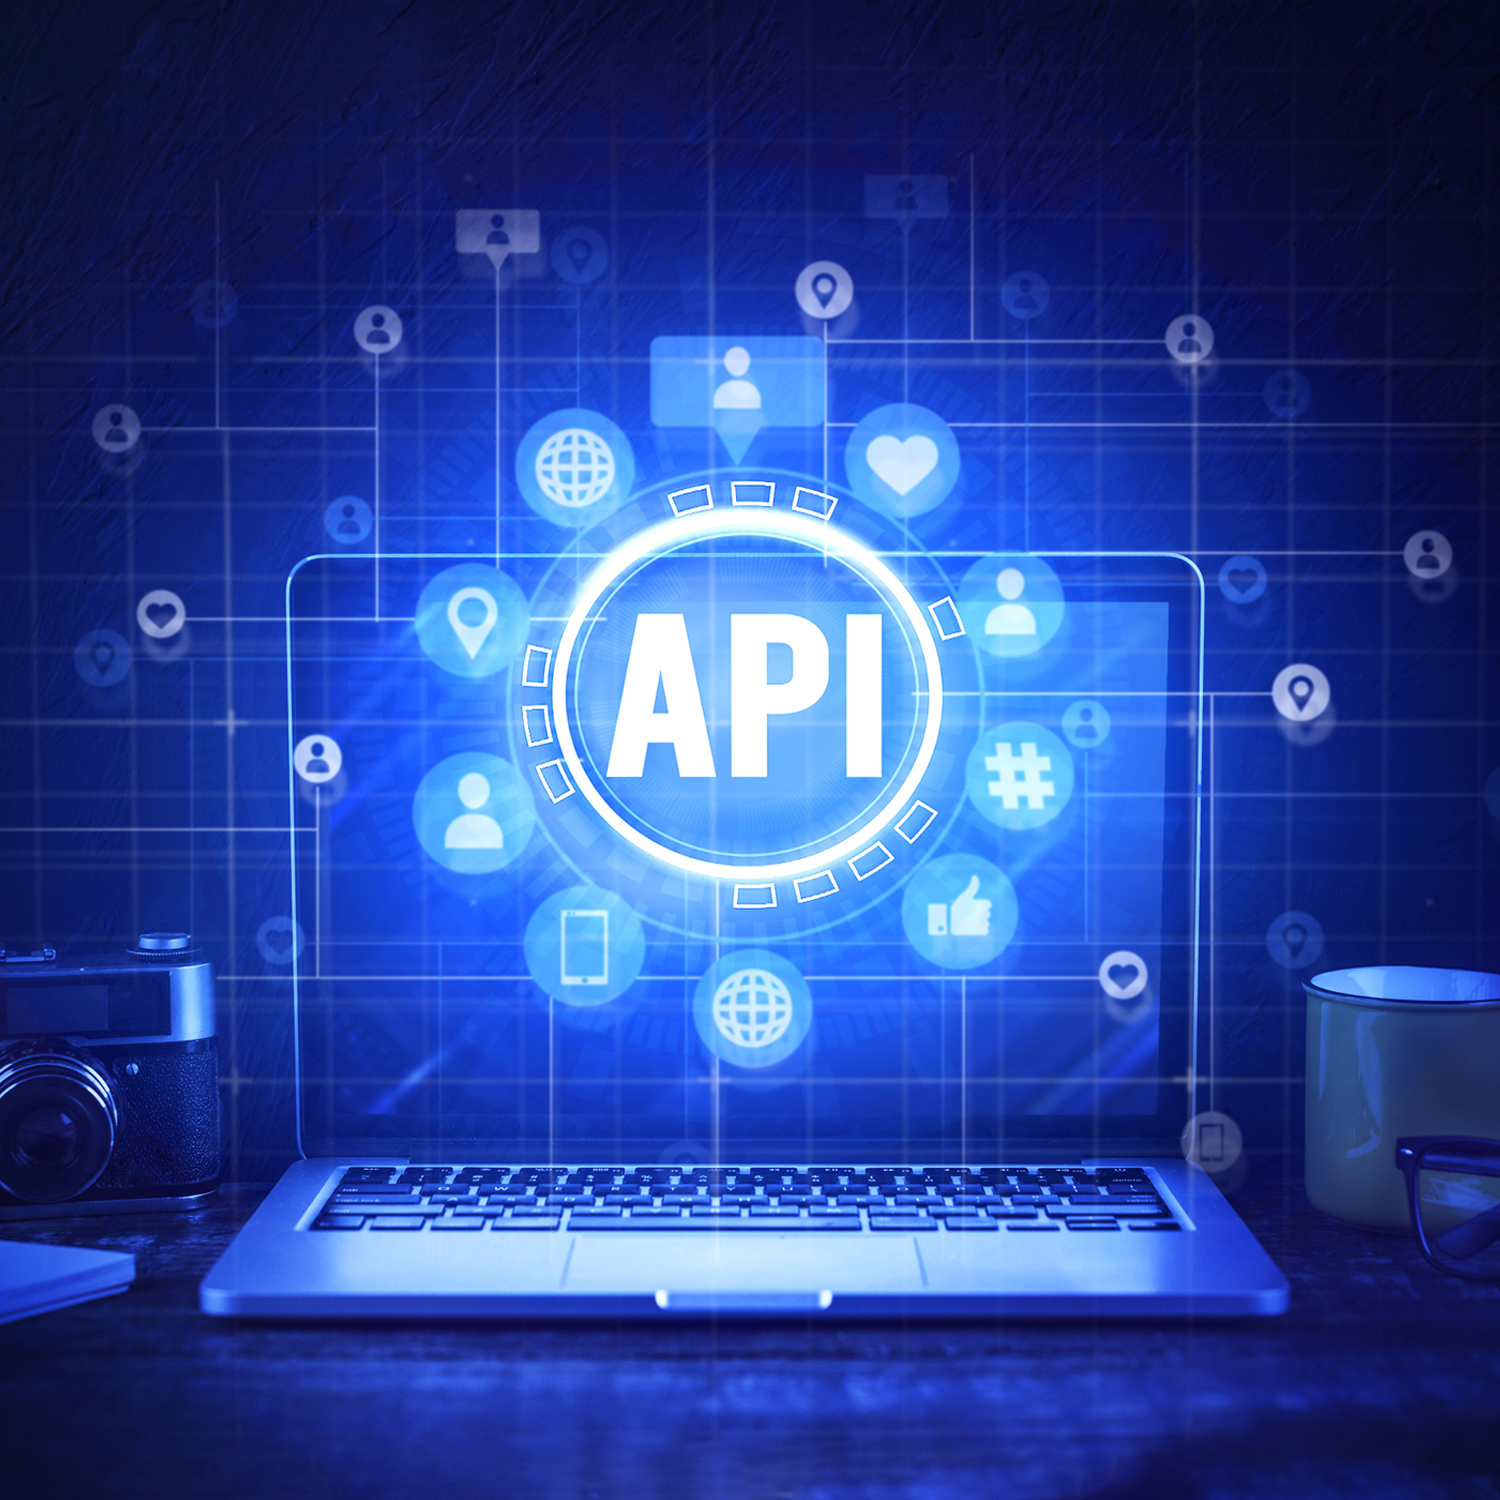 Custom API Development